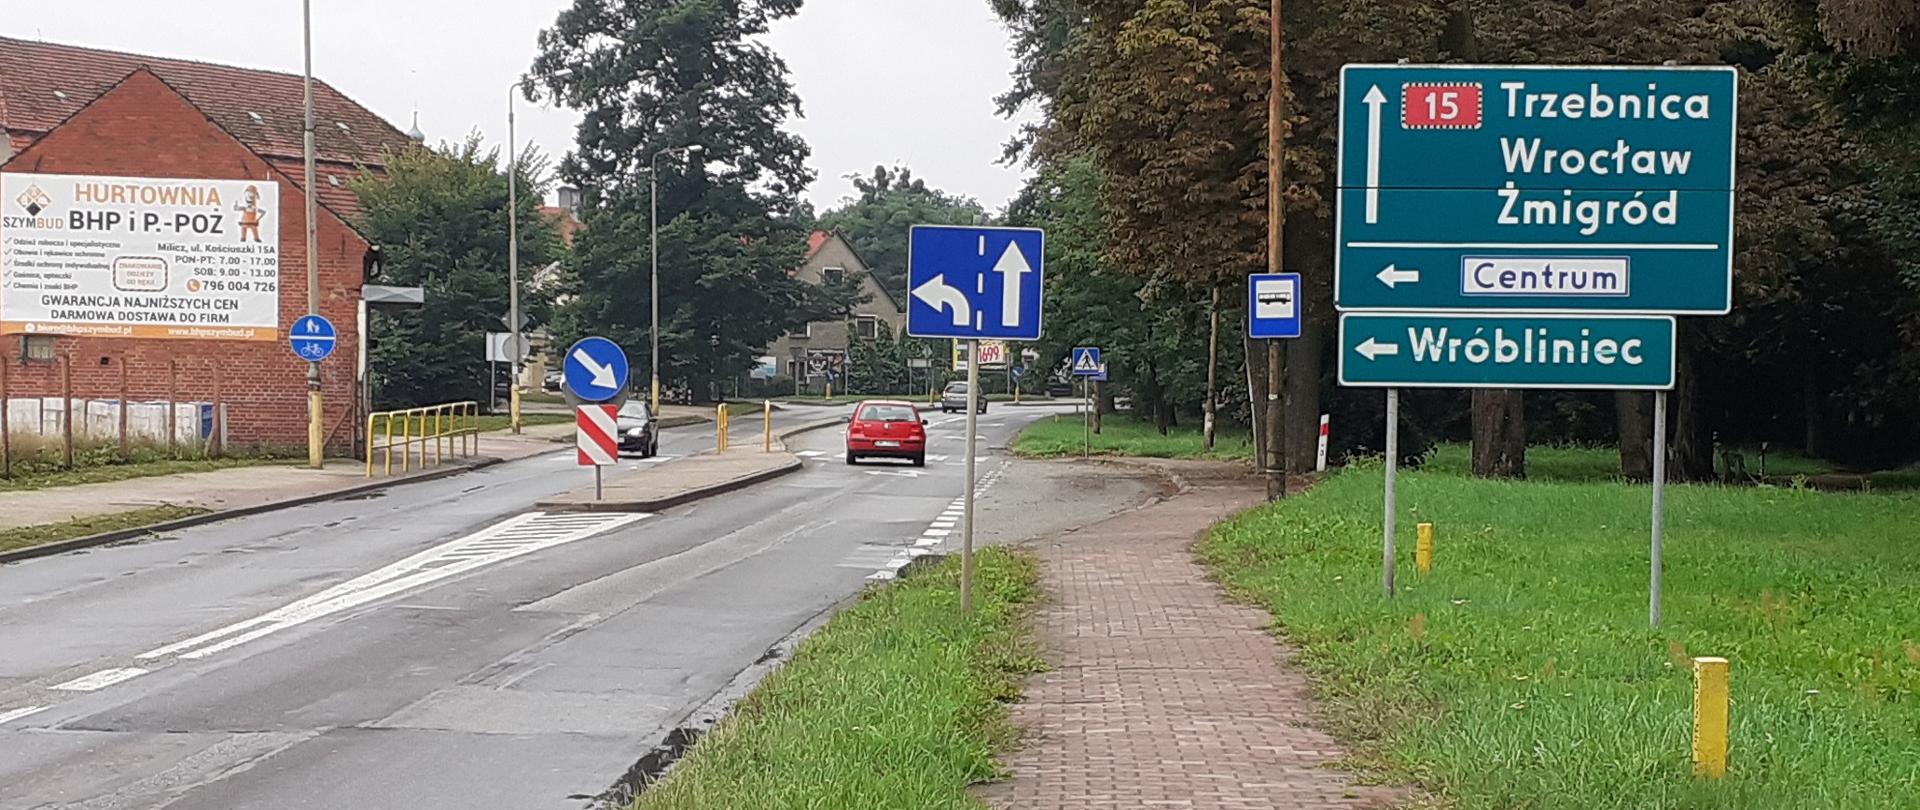 Na zdjęciu widać drogę krajową nr 15 w Miliczu